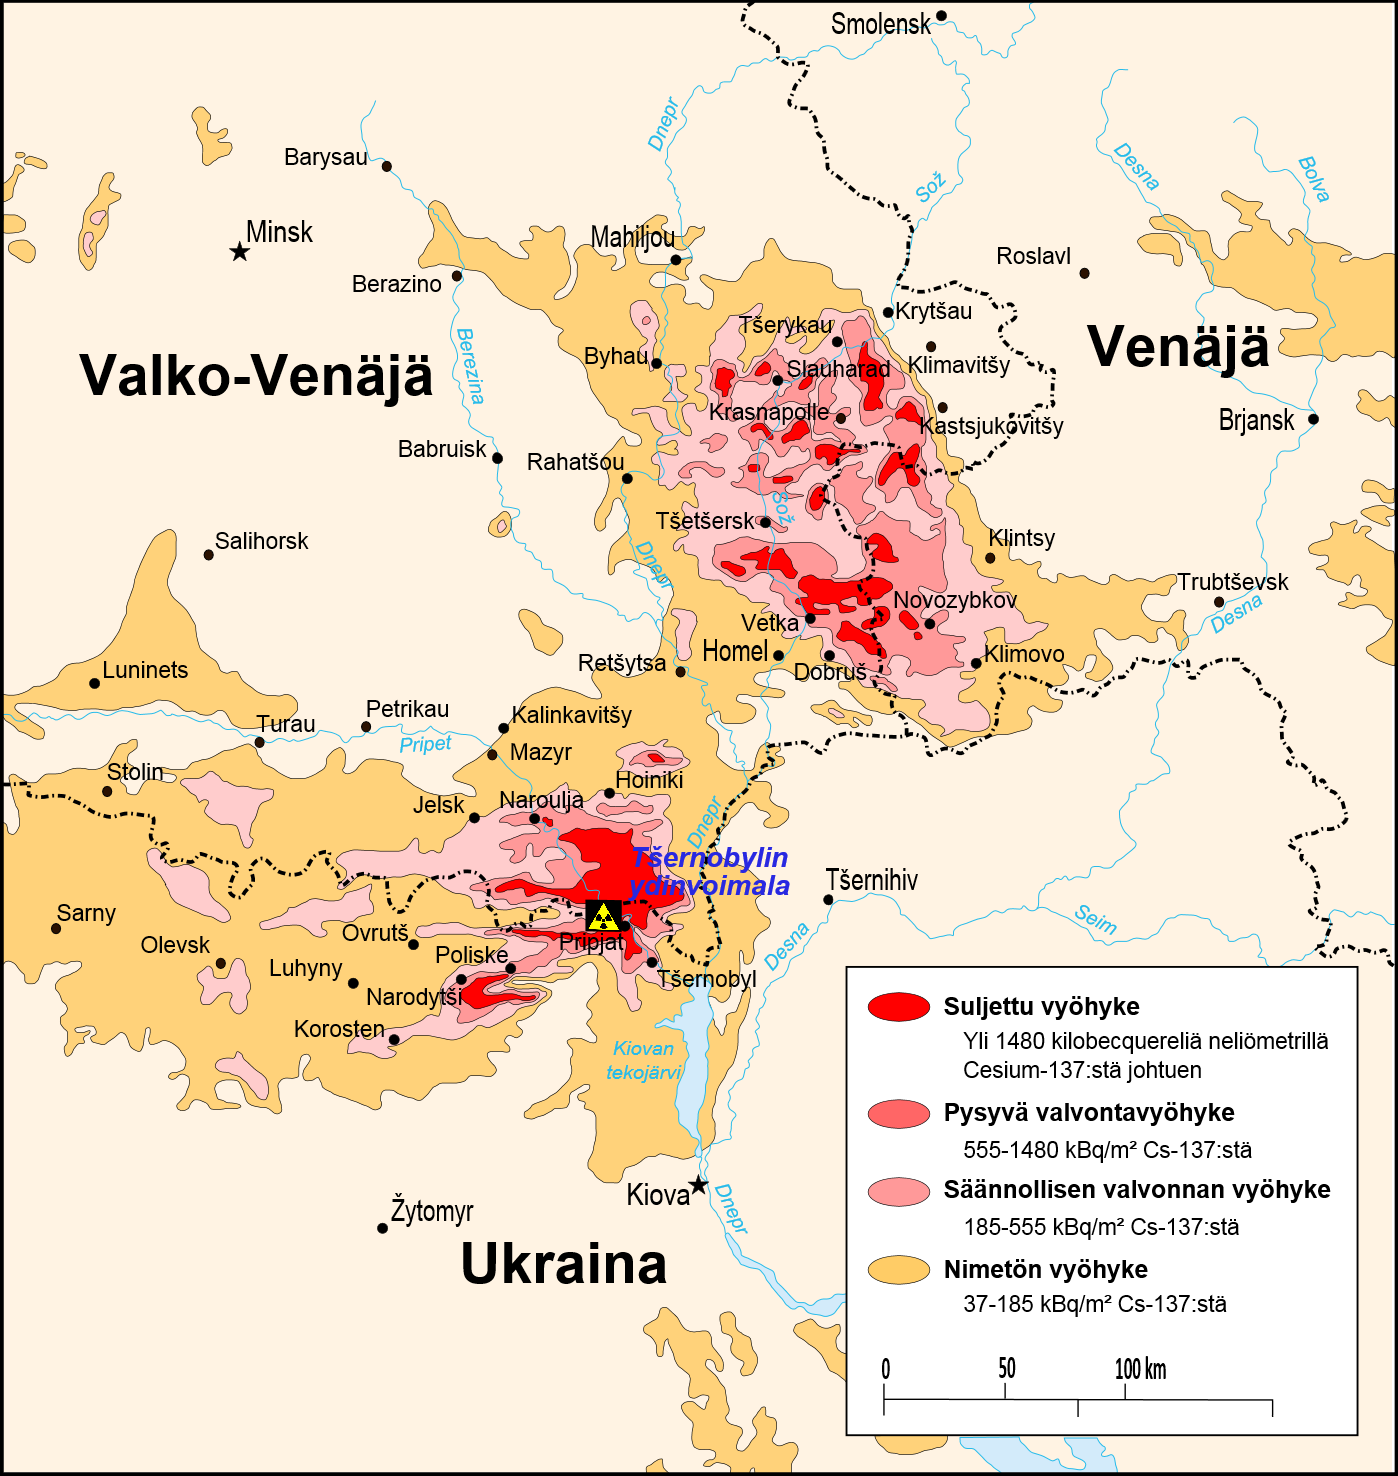 Säteilyarvon mukaan määritetyt vyöhykkeet Ukrainan, Valko-Venäjän ja